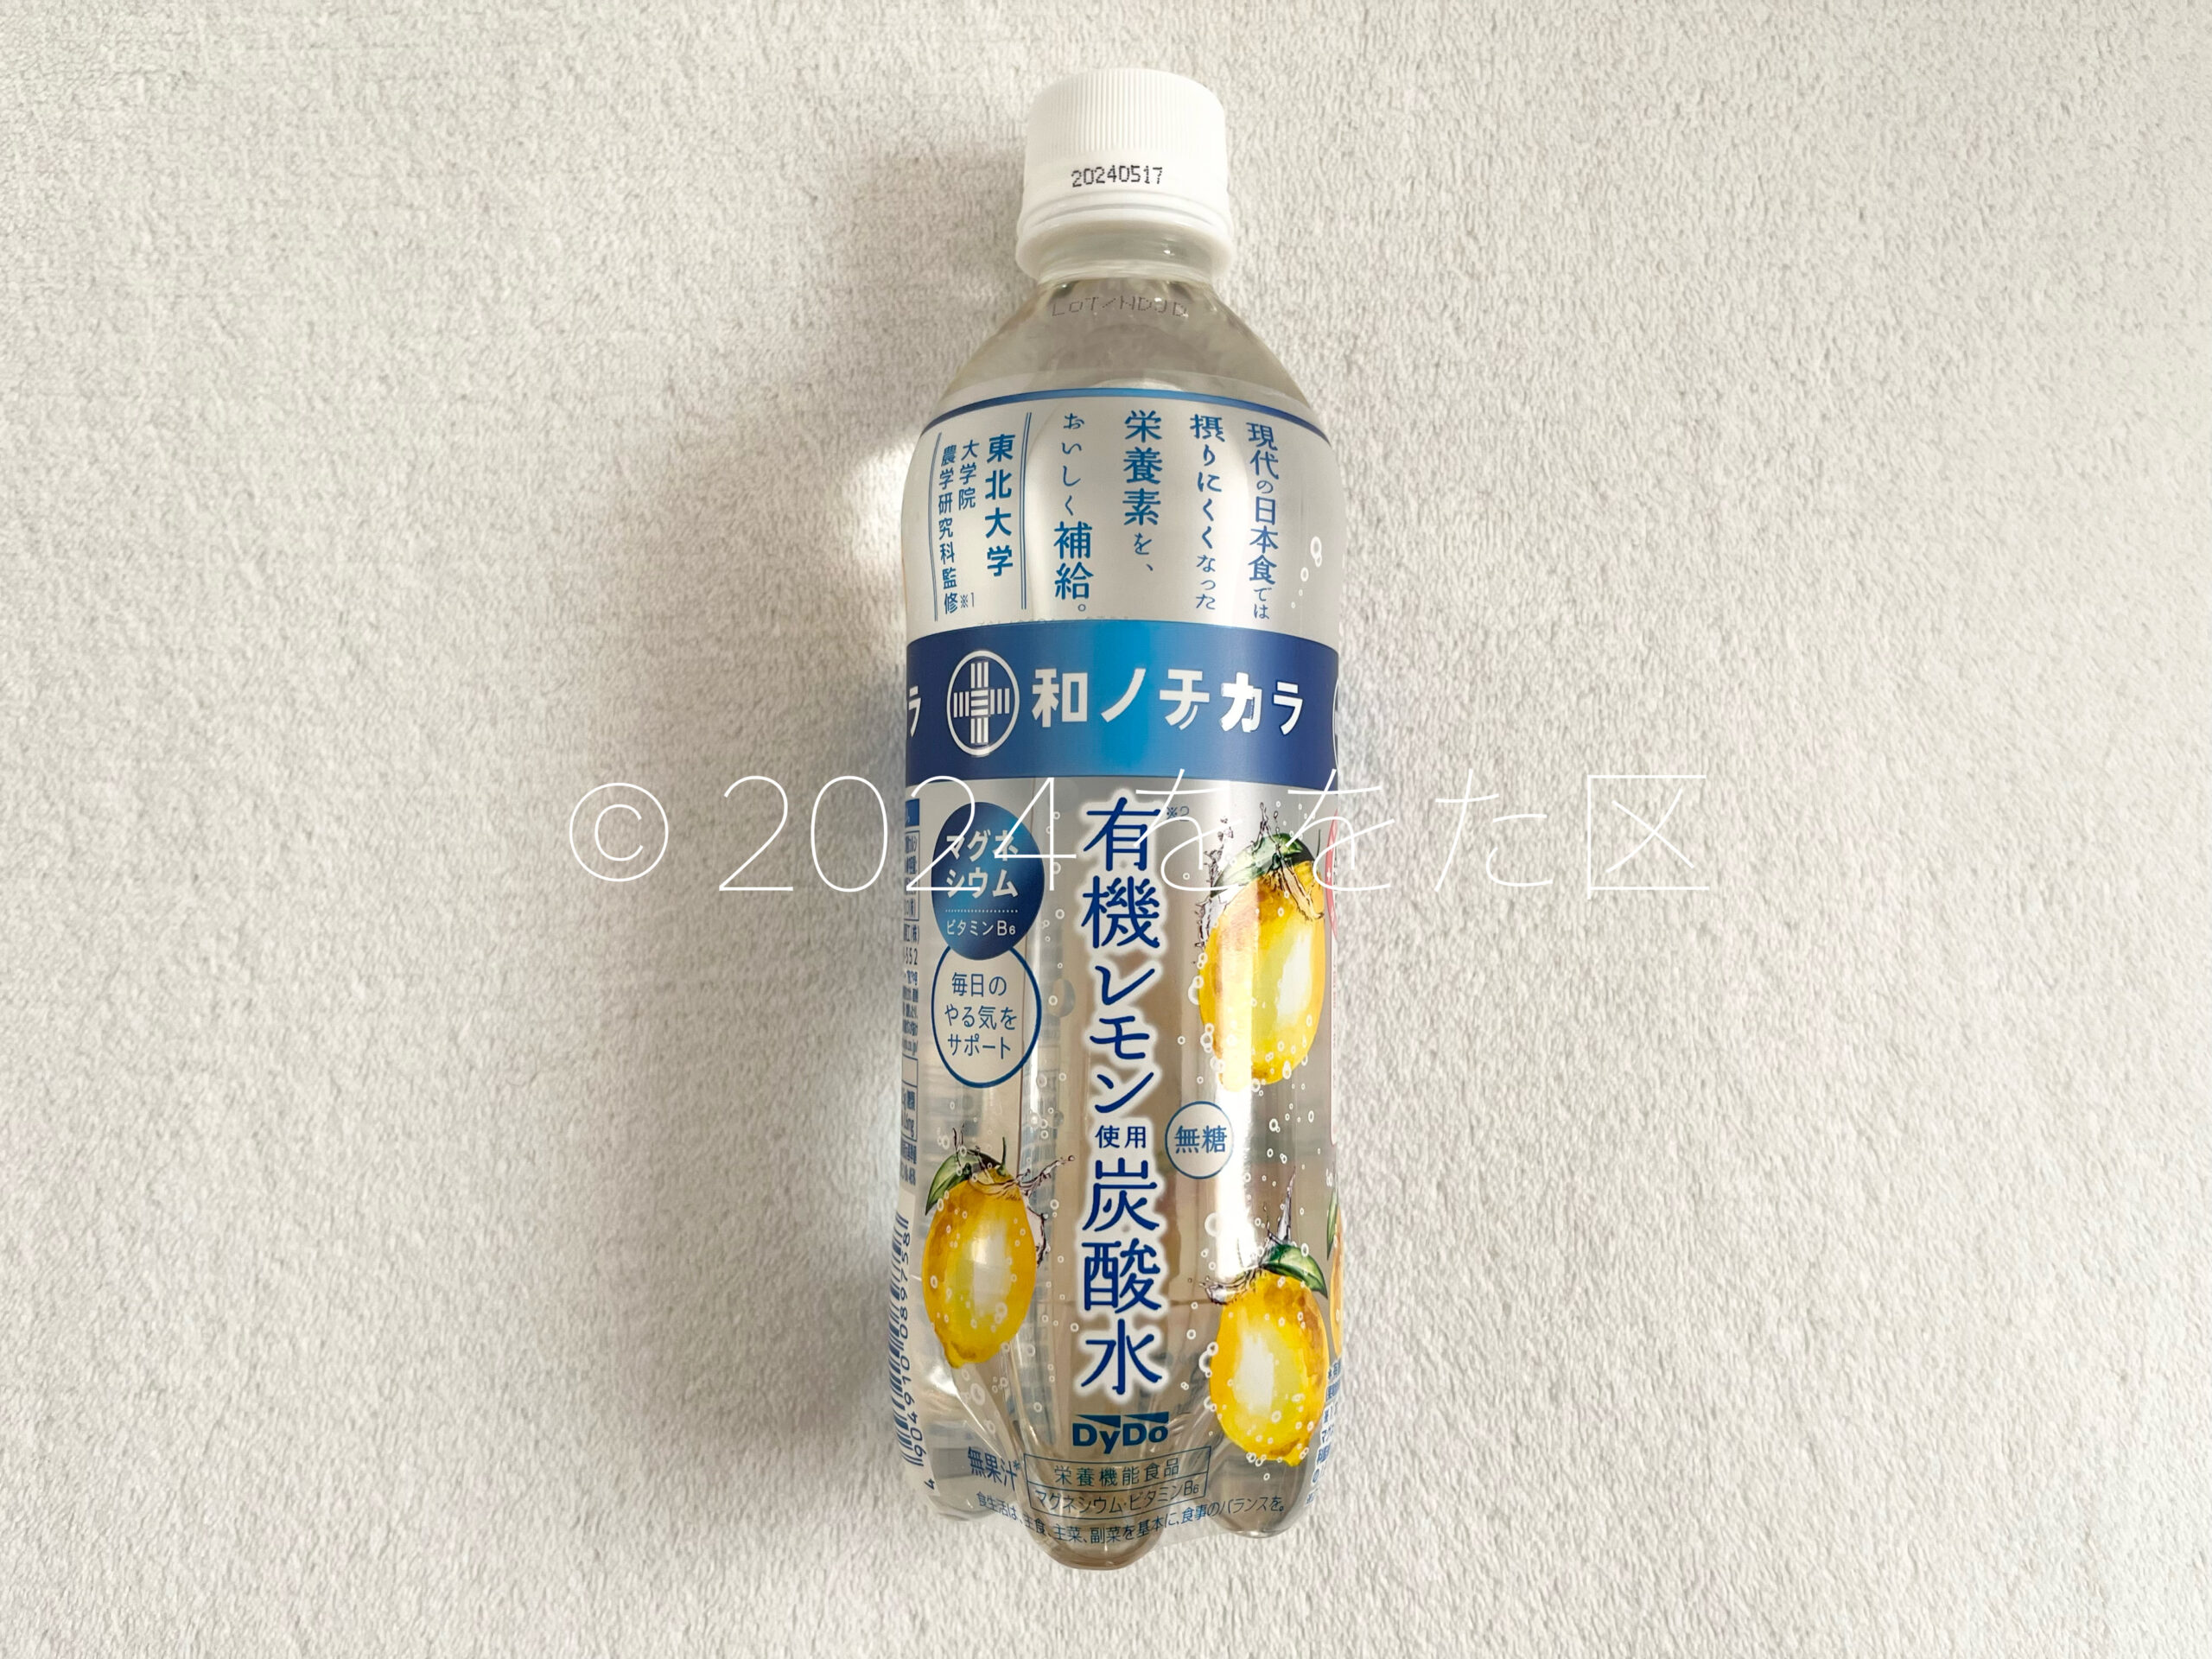 和ノチカラ 有機レモン使用炭酸水のパッケージデザイン